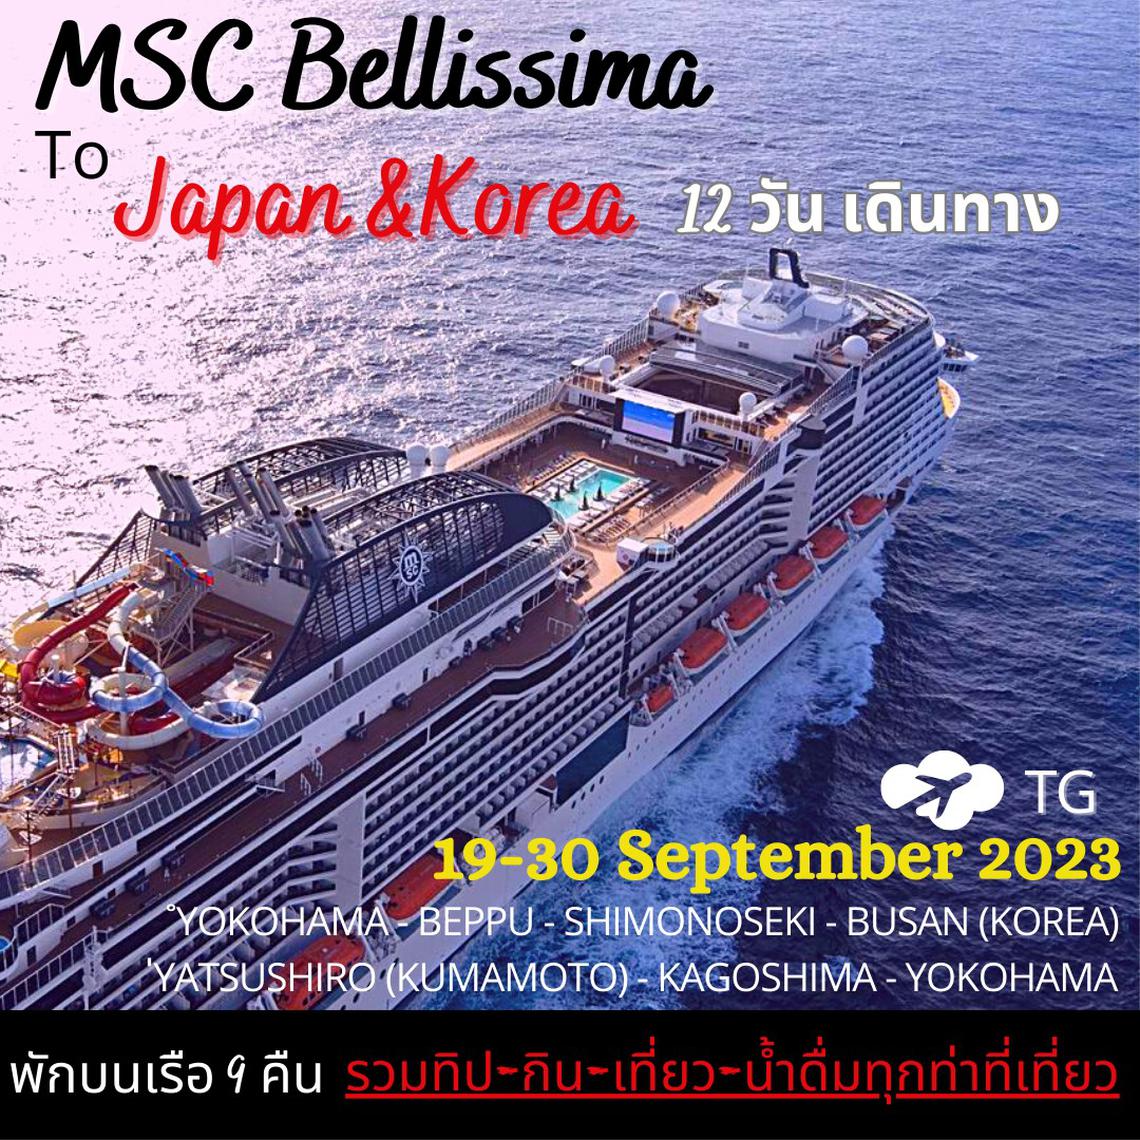 เที่ยวญี่ปุ่นสไตล์ใหม่กับ เรือสำราญ MSC Bellissima